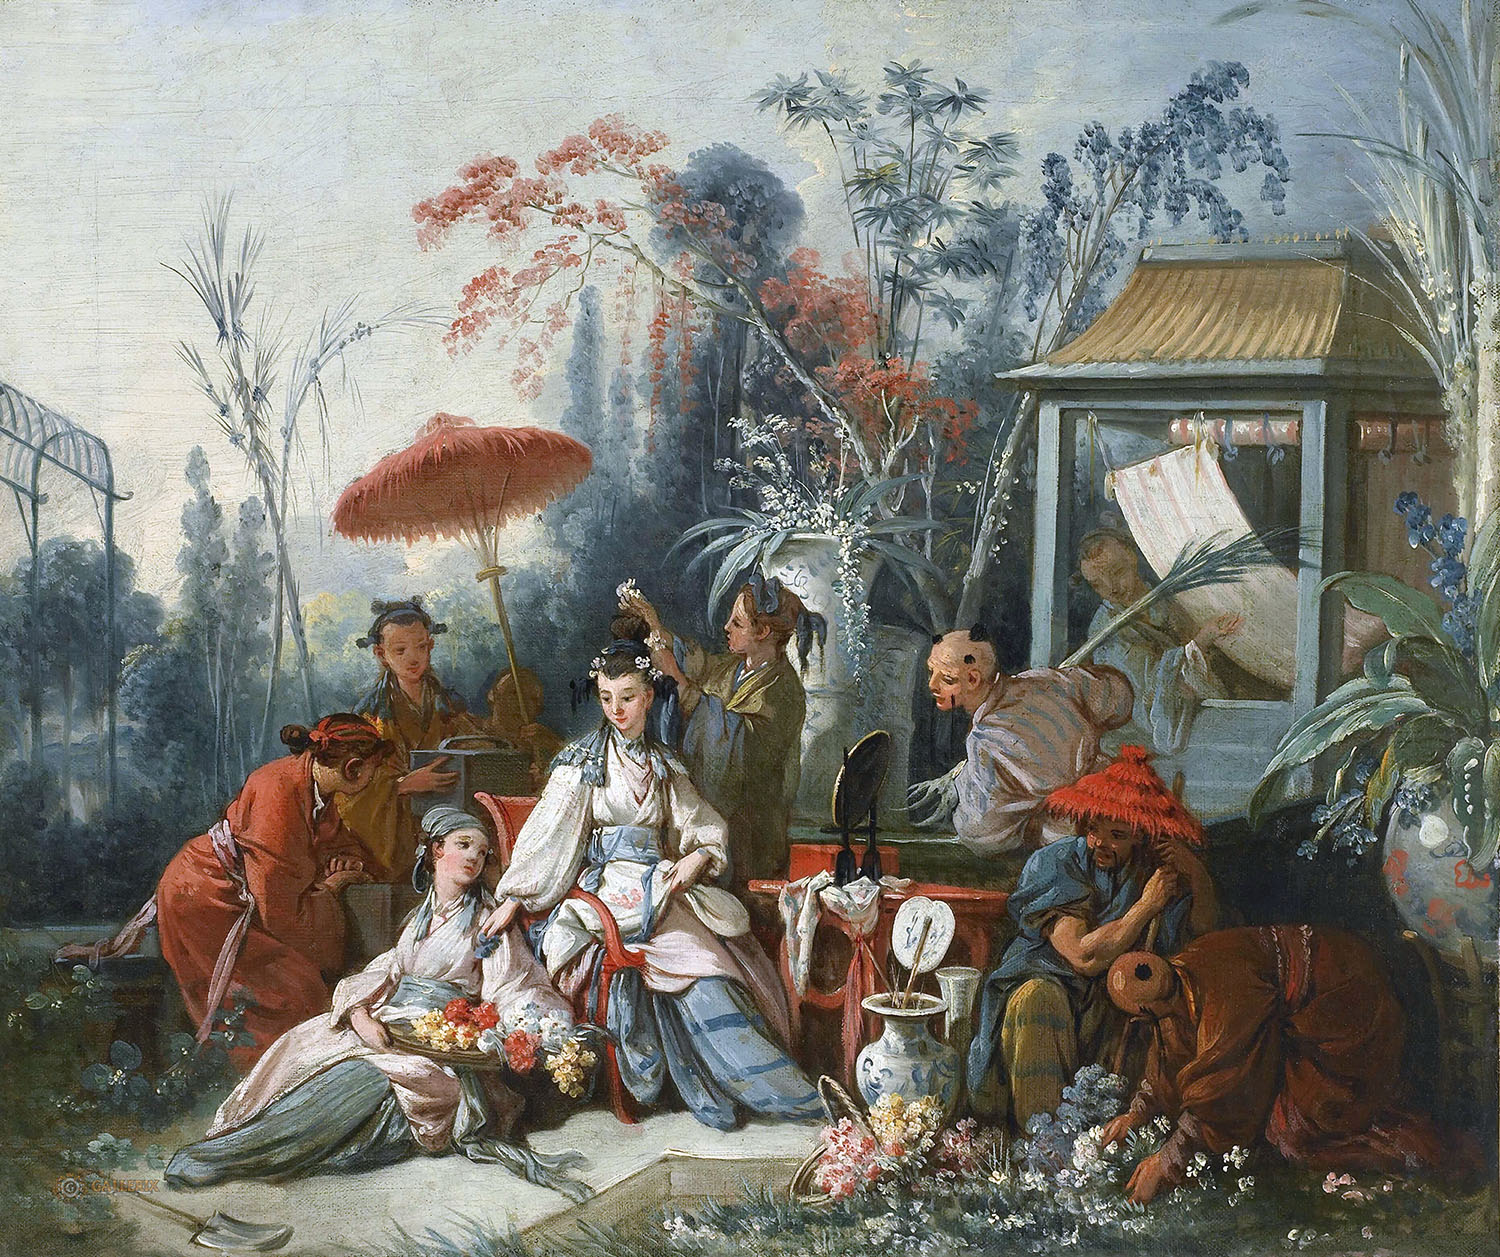 Франсуа Буше. "Китайский садик". 1742. Картон для гобелена. Музей искусств, Безансон.